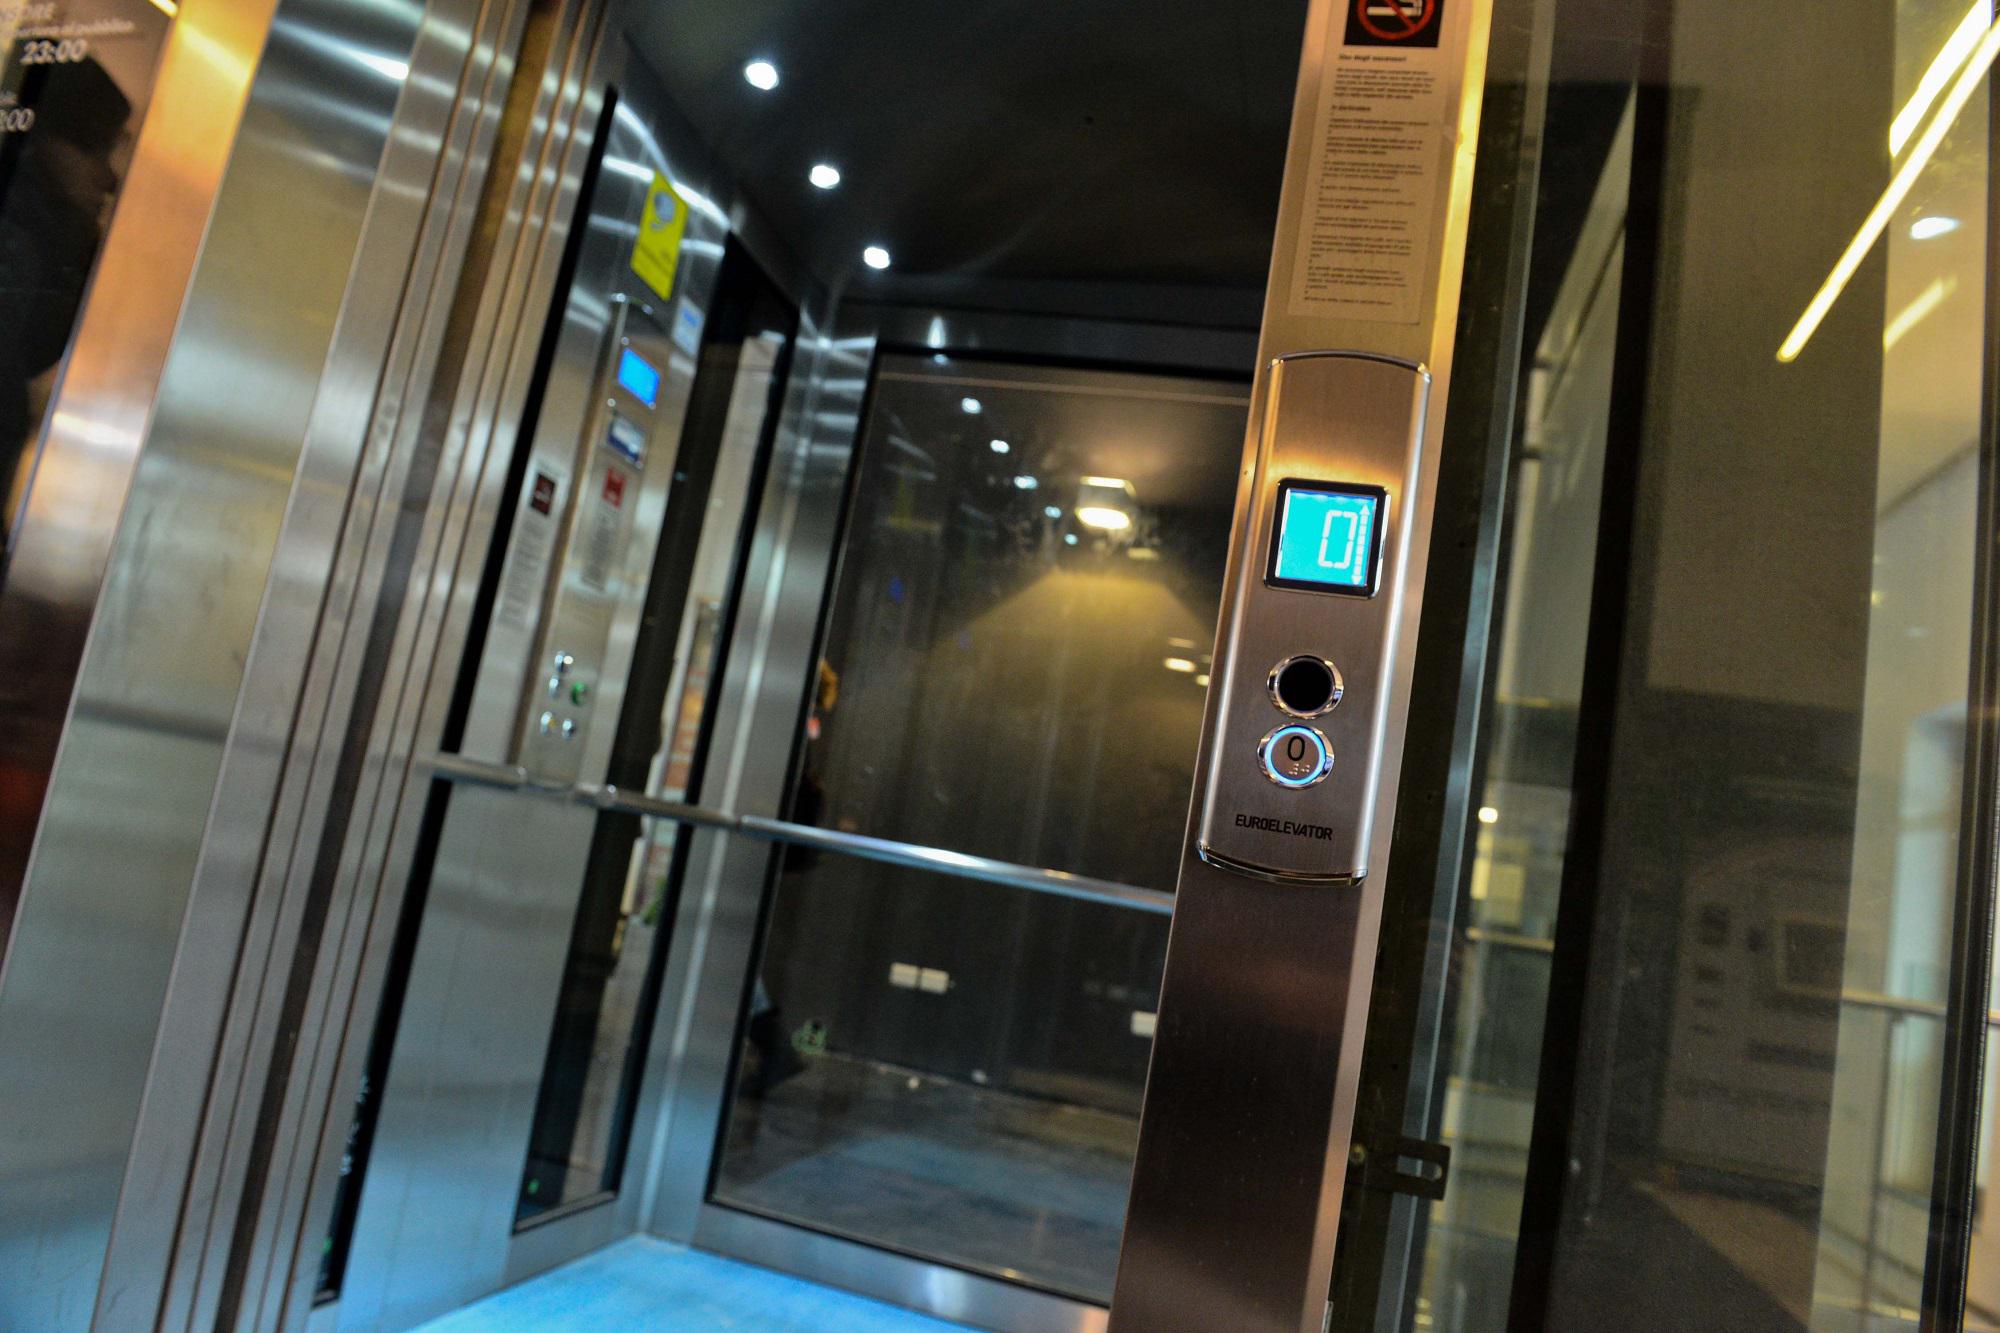 Ragazza morta nel vano ascensore: a chi spetta la manutenzione?